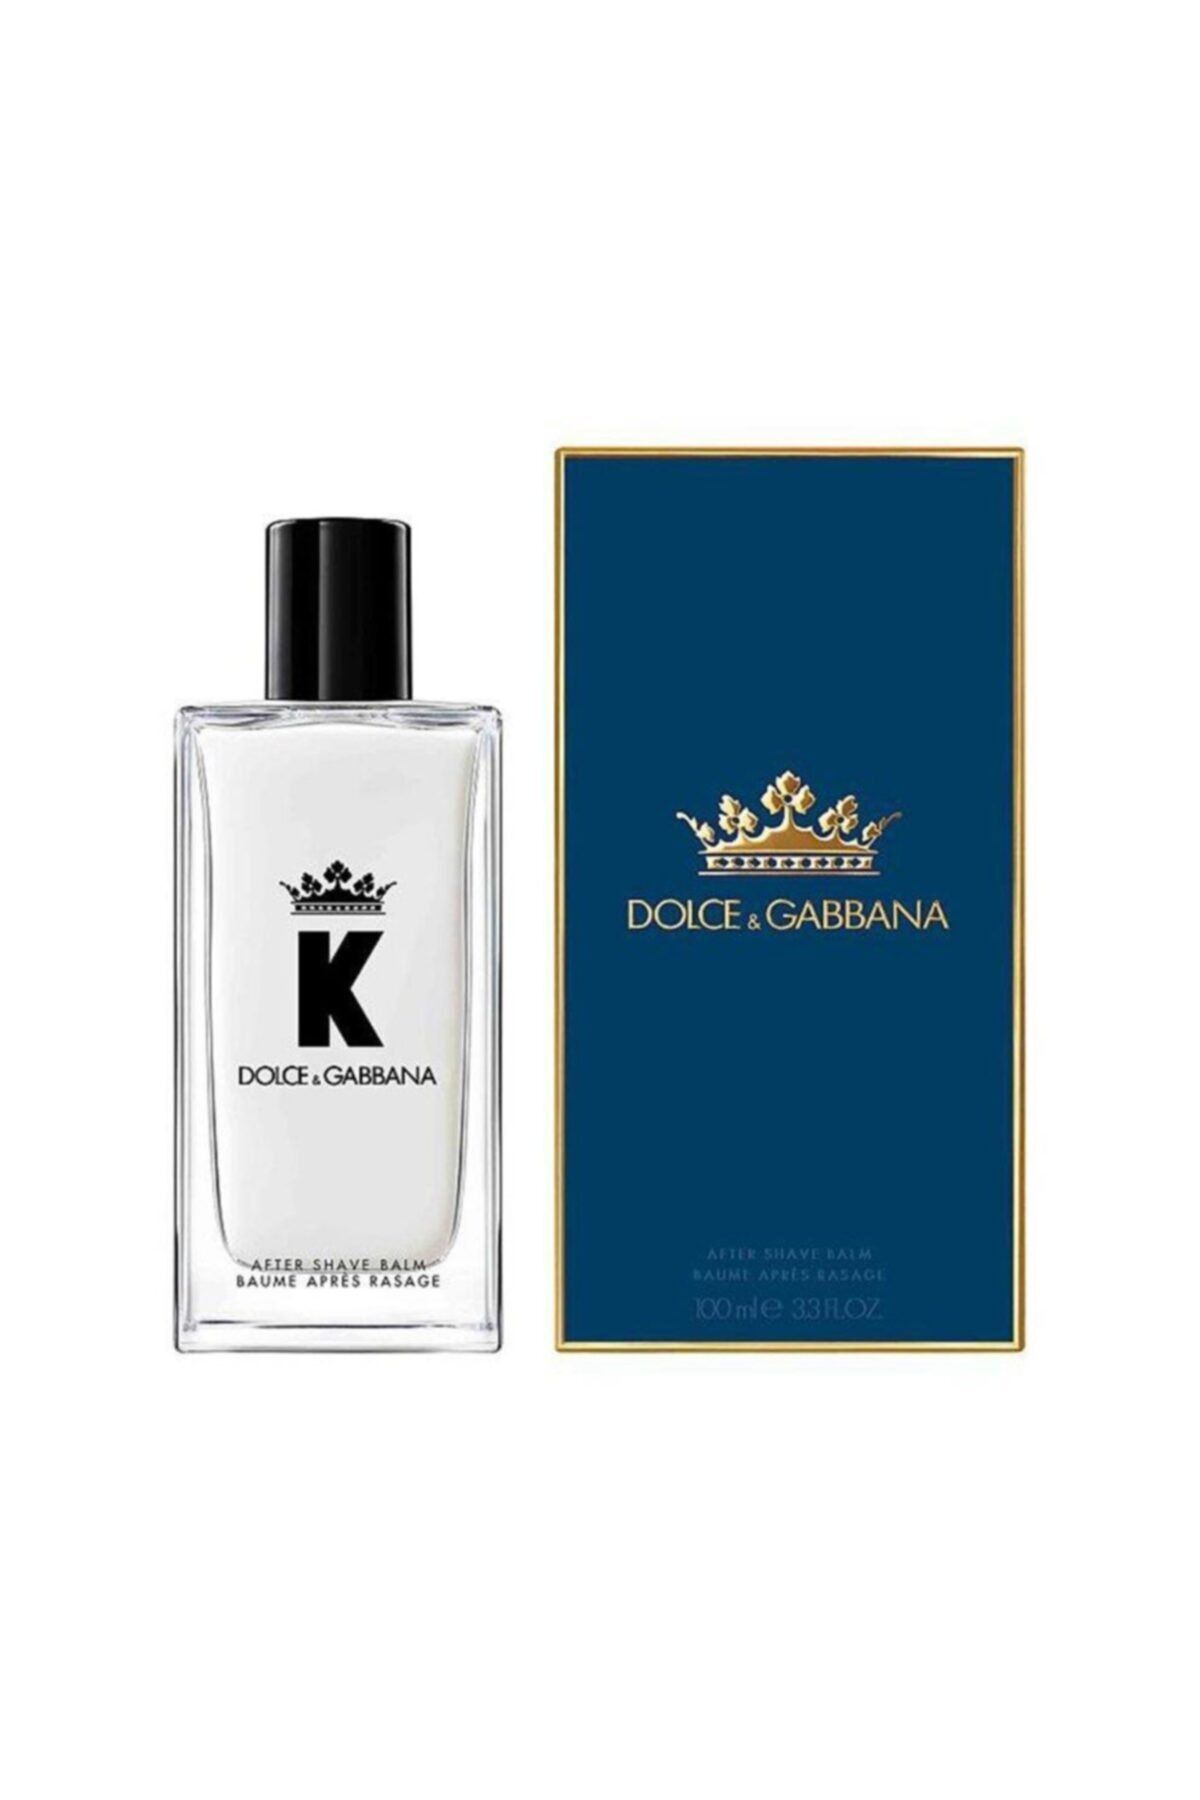 Dolce&Gabbana K After Shave Balm 100 ml